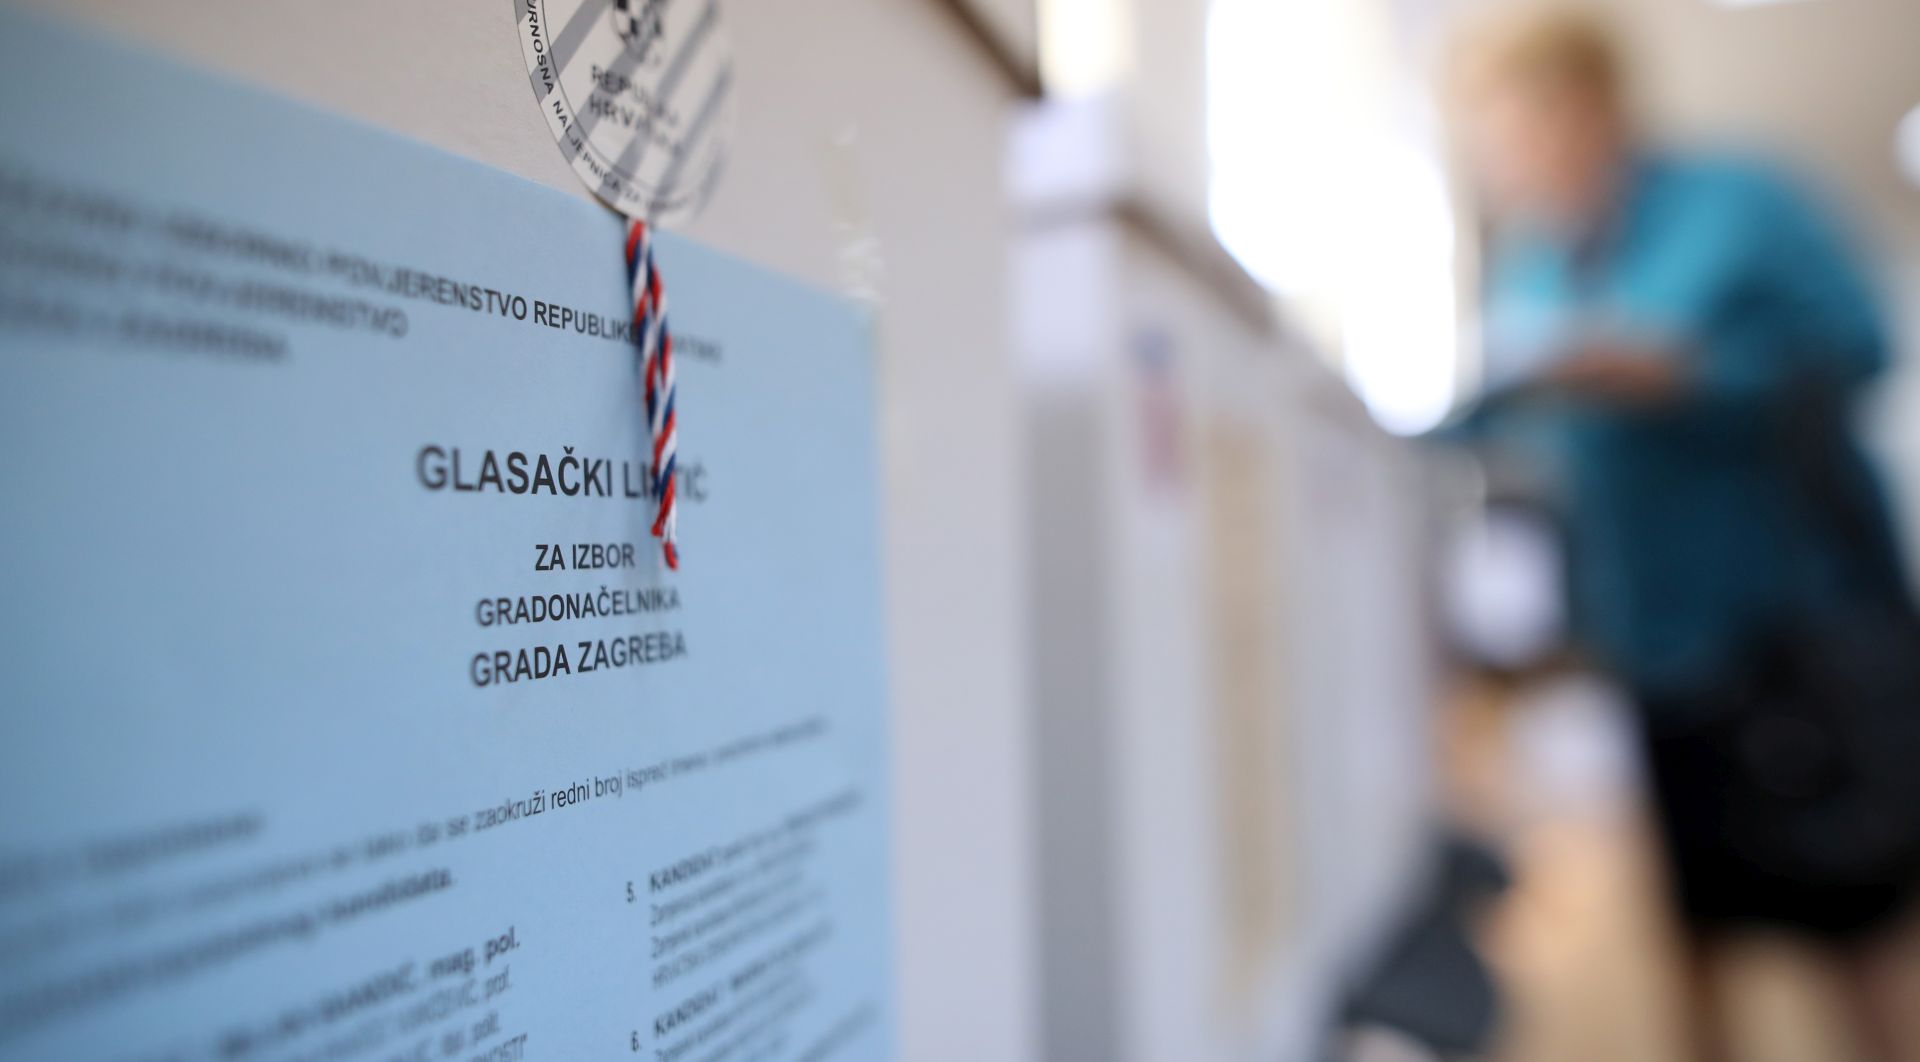 Zagreb, 21.05.2017 - Glasaèka kutija sa natpisom za izbor gradonaèelnika Grada Zagreba tijekom lokalnih izbora u Hrvatskoj.
foto HINA/ Damir SENÈAR /ds